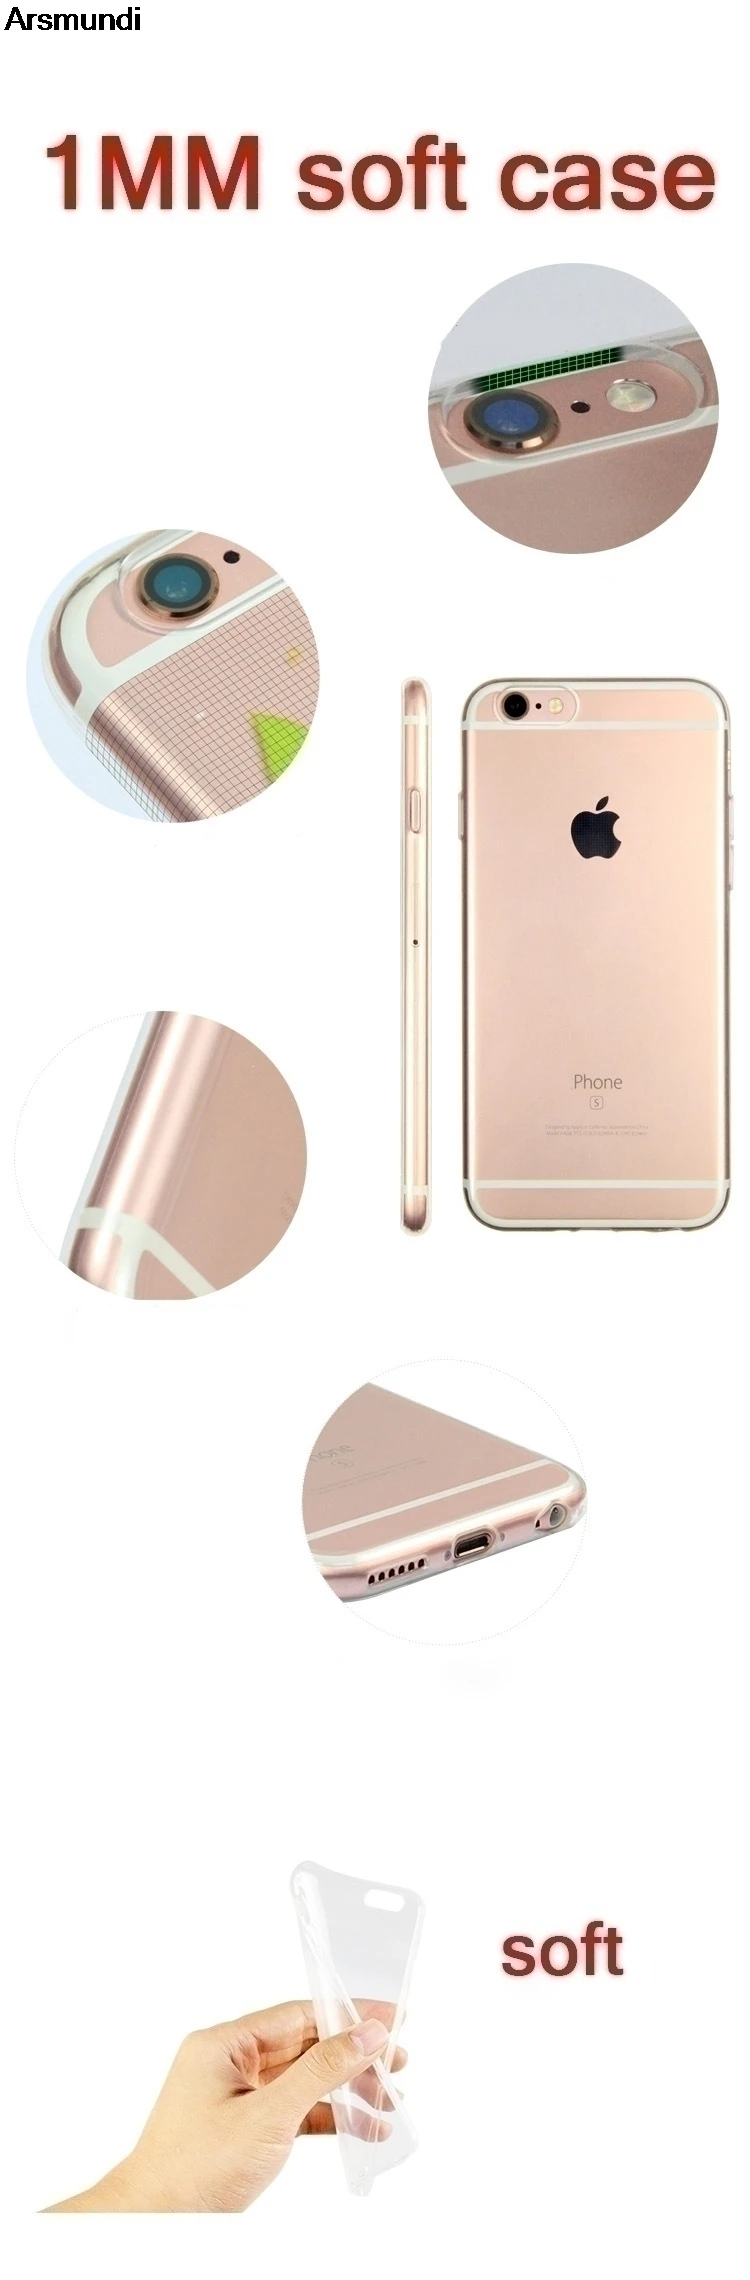 Чехол для телефона Arsmundi с милыми крипером и эндерменом для iPhone 4S 5C 5S 6 s 7 8 Plus 8 Plus X Чехол кристально чистый мягкий TPU чехол S